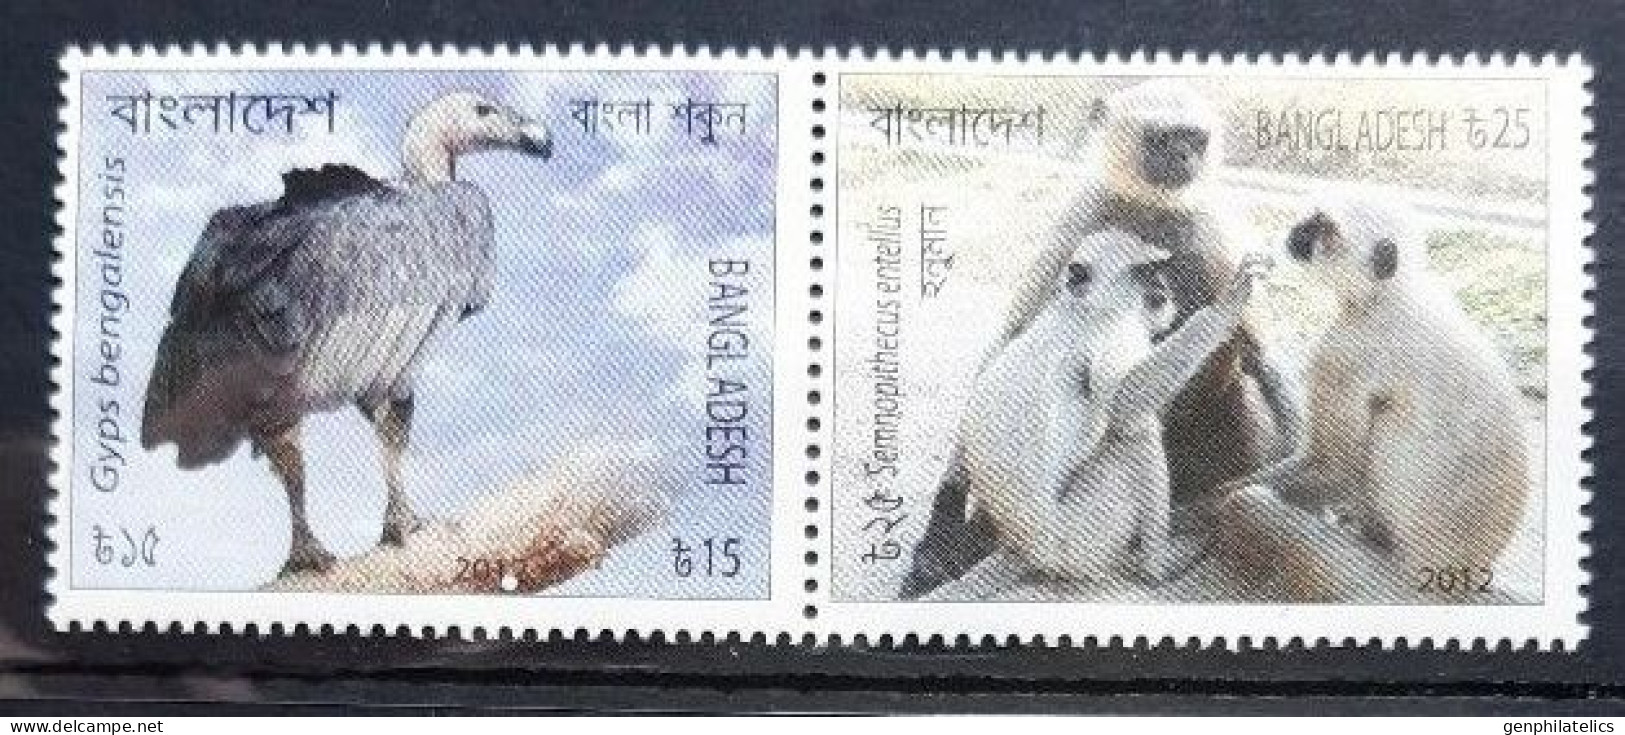 BANGLADESH 2012 FAUNA Endangered Animals. Birds. MONKEY VULTURE - Fine Set MNH - Bangladesch